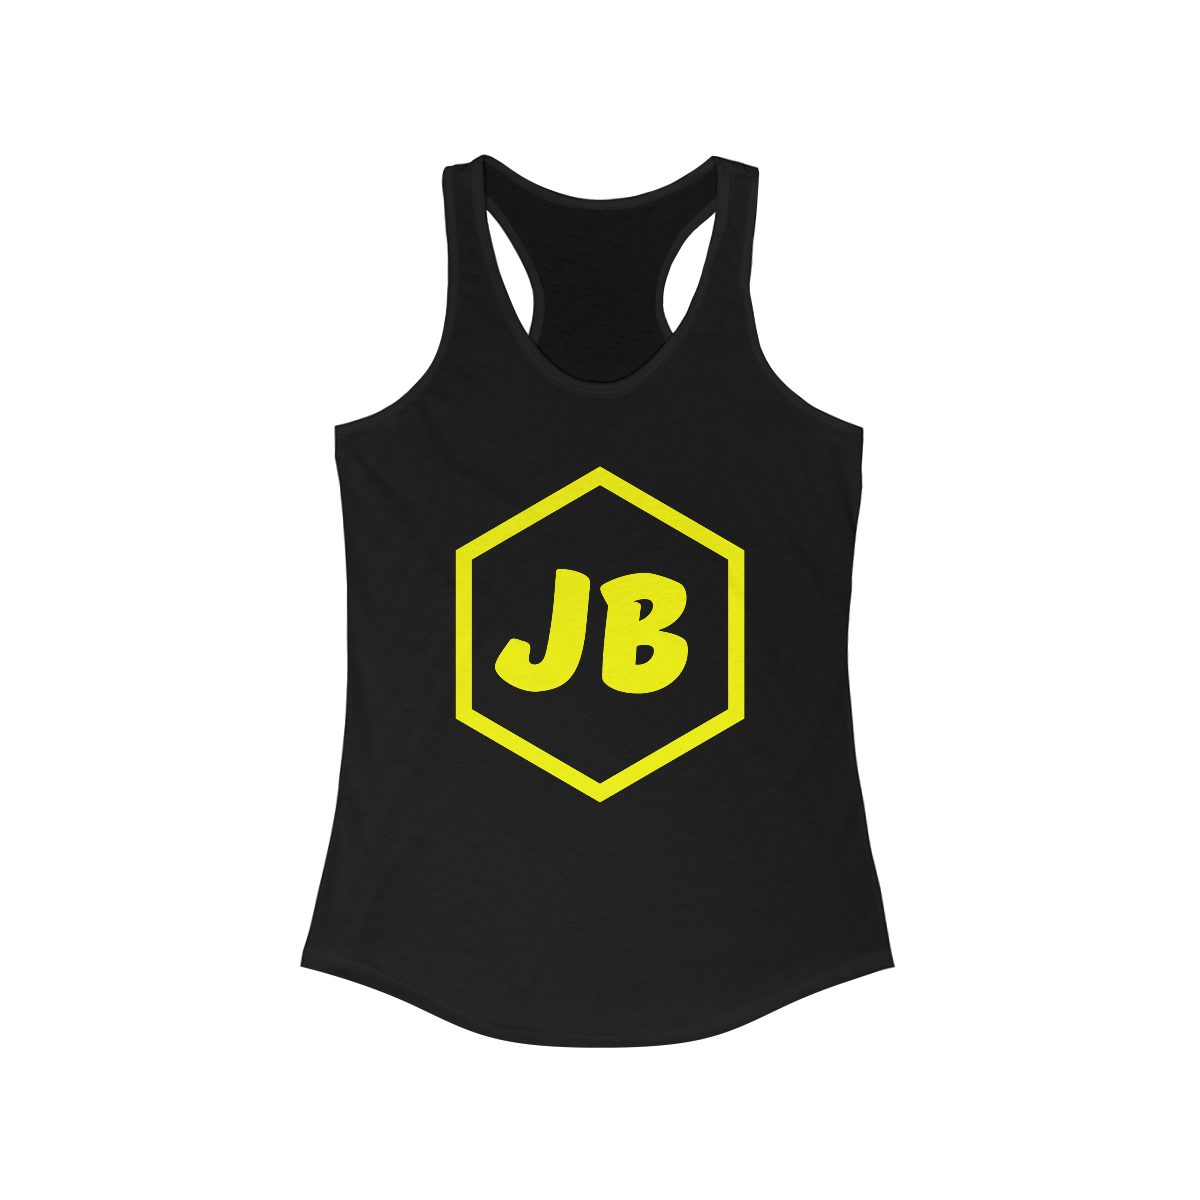 JBecker Offical logo Women's Ideal Racerback Tank